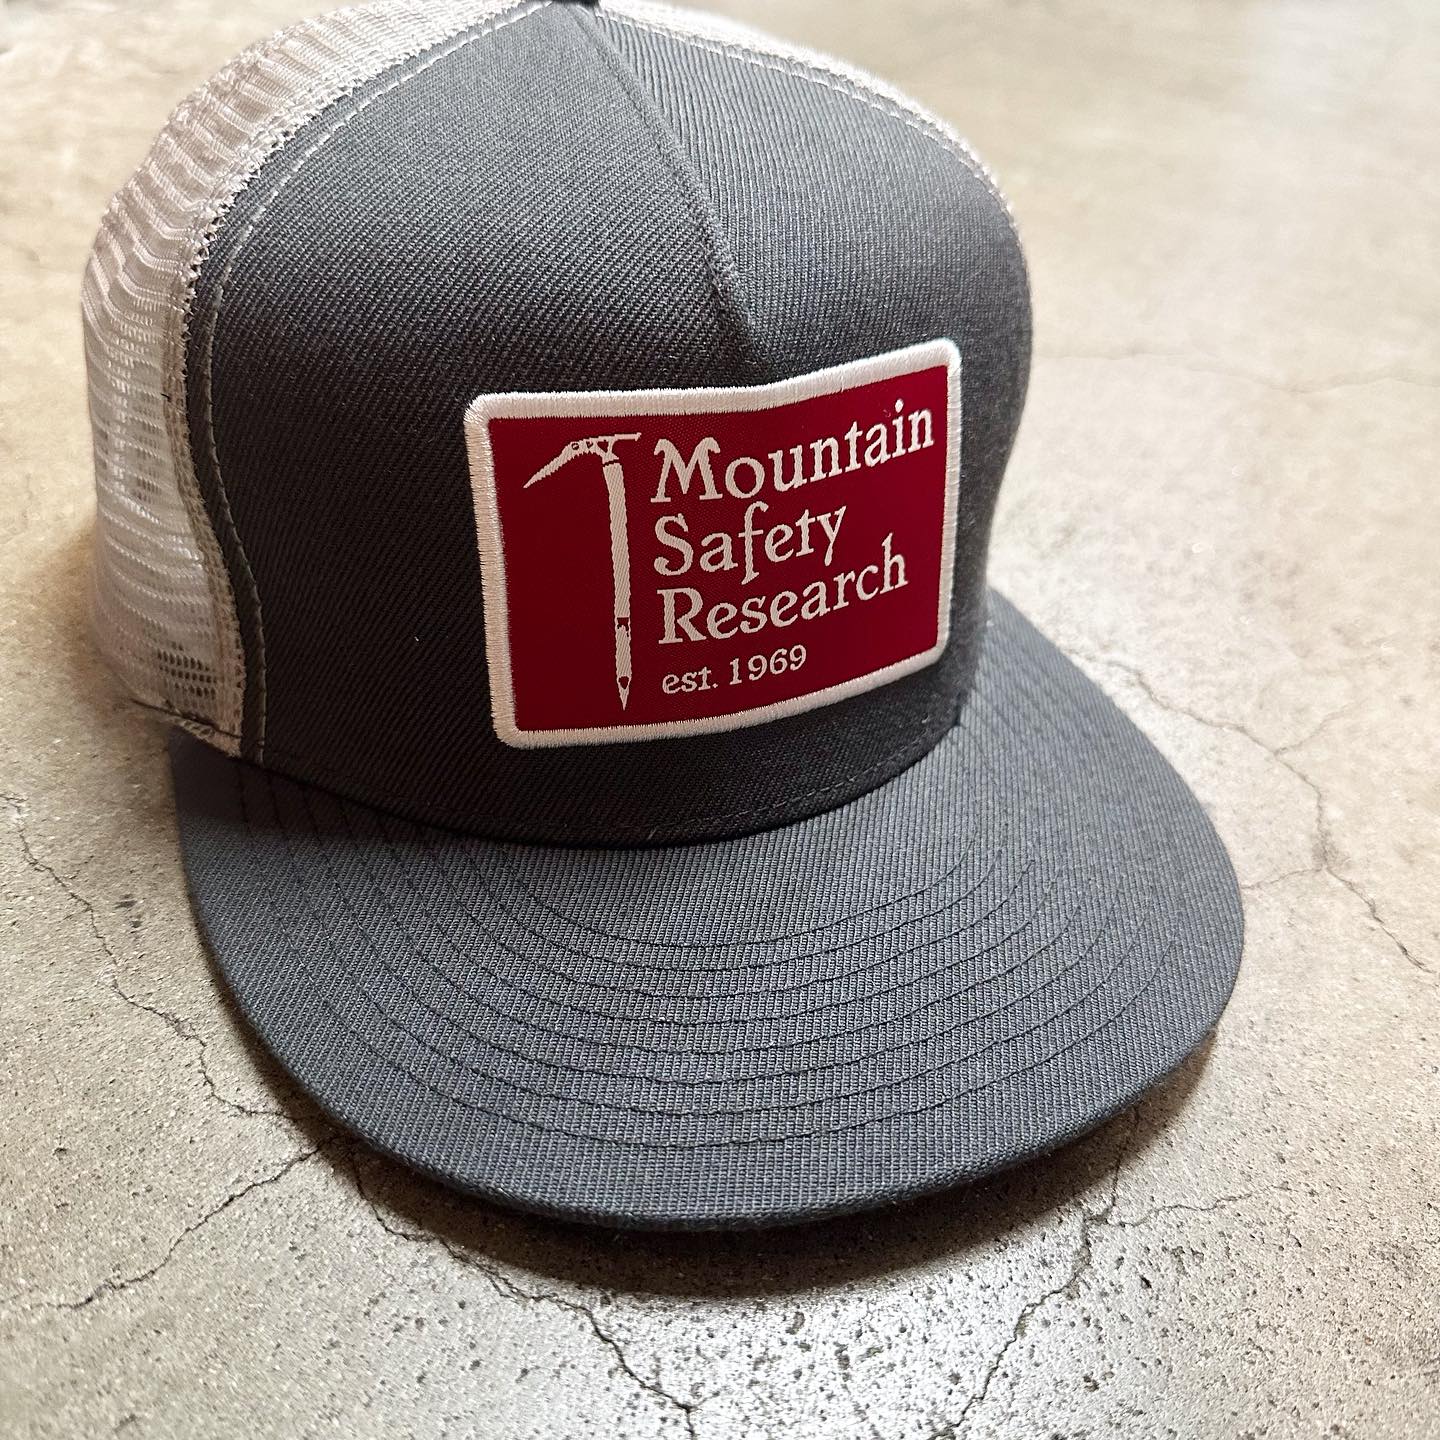 MSR(Mountain Safety Research）のロゴパッチ付きのメッシュキャップです。 | 山とスキーのアウトドアショップ ヨシキ＆P2